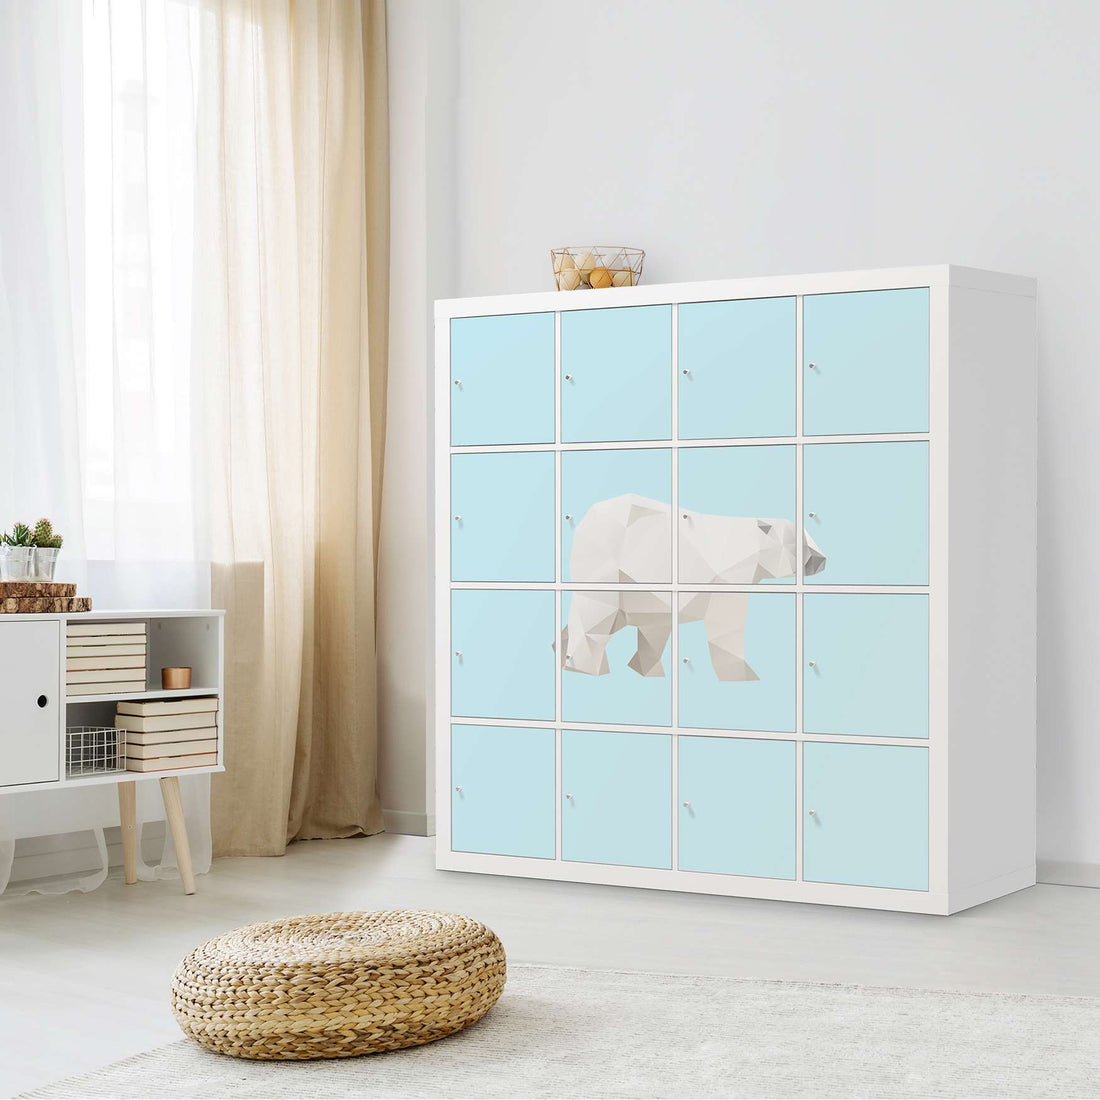 Möbelfolie Origami Polar Bear - IKEA Kallax Regal 16 Türen - Kinderzimmer